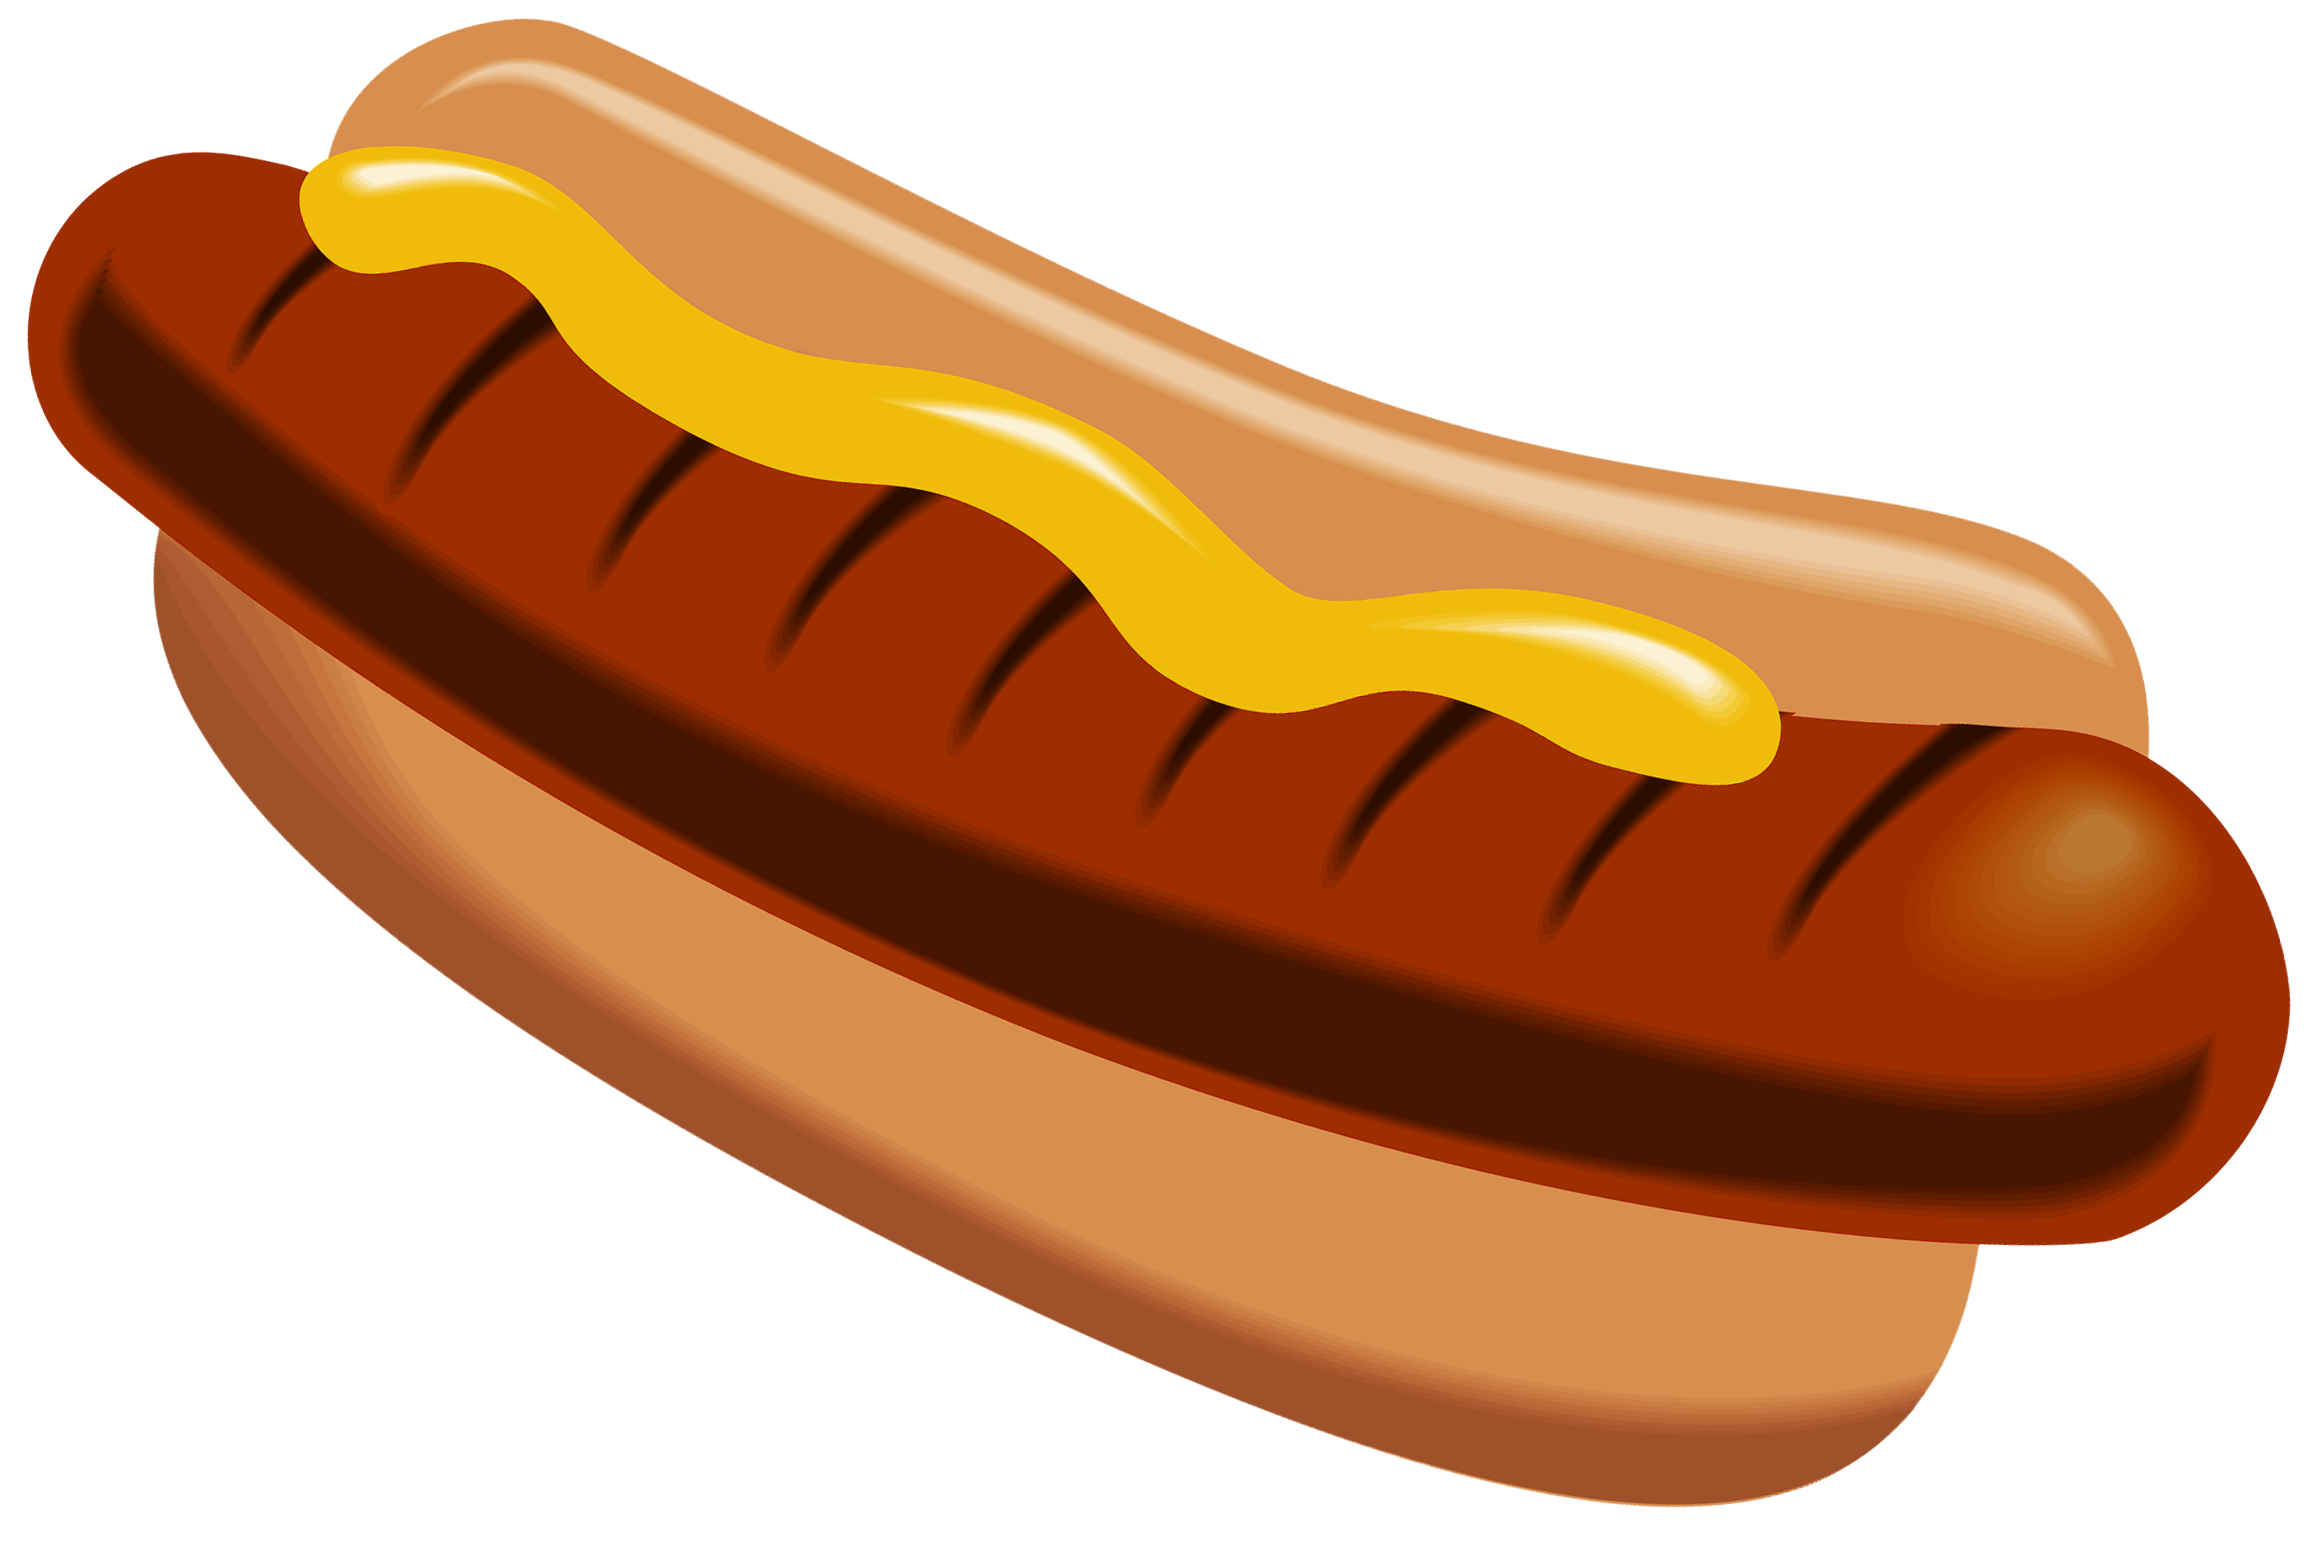 hot dog clip art png